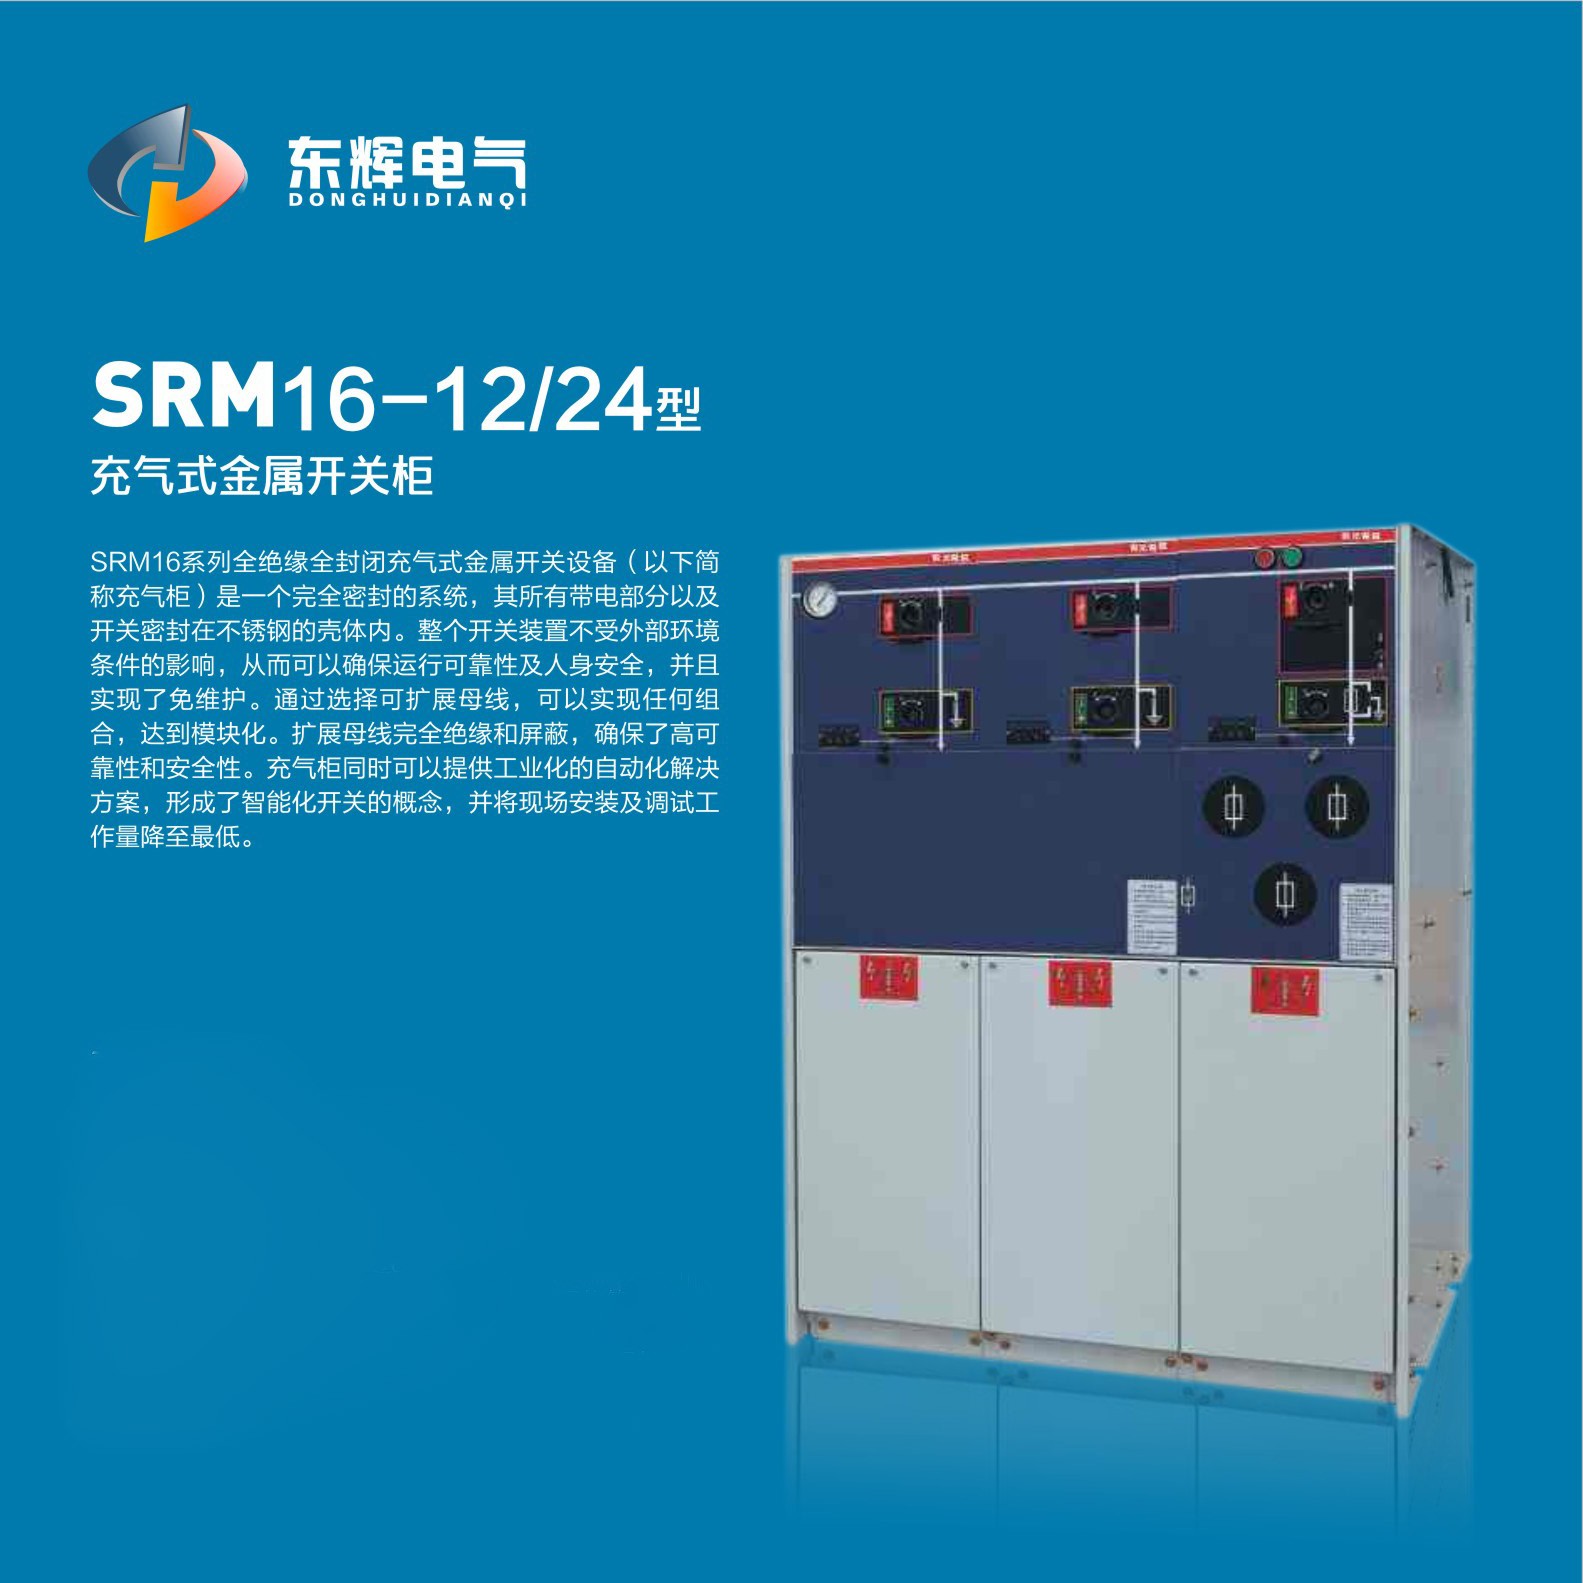 SRM16-12/24型充氣式金屬開關柜